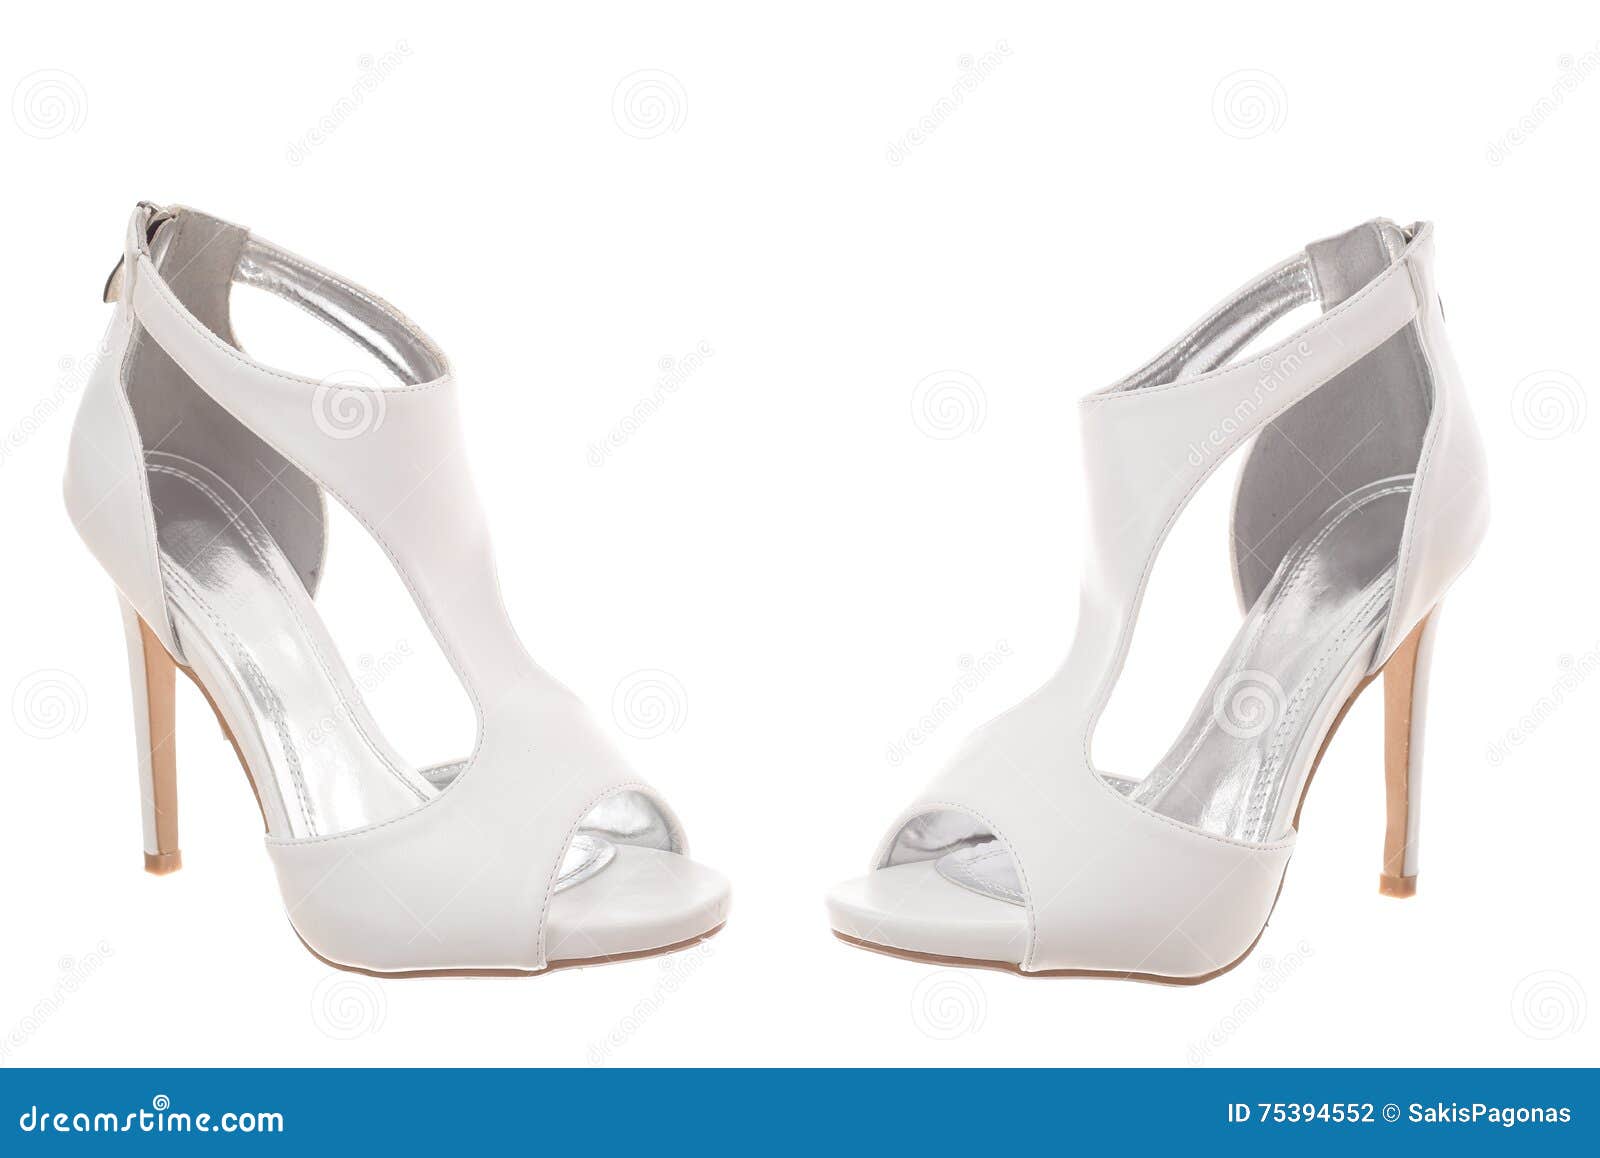 scarpe bianche donna tacco